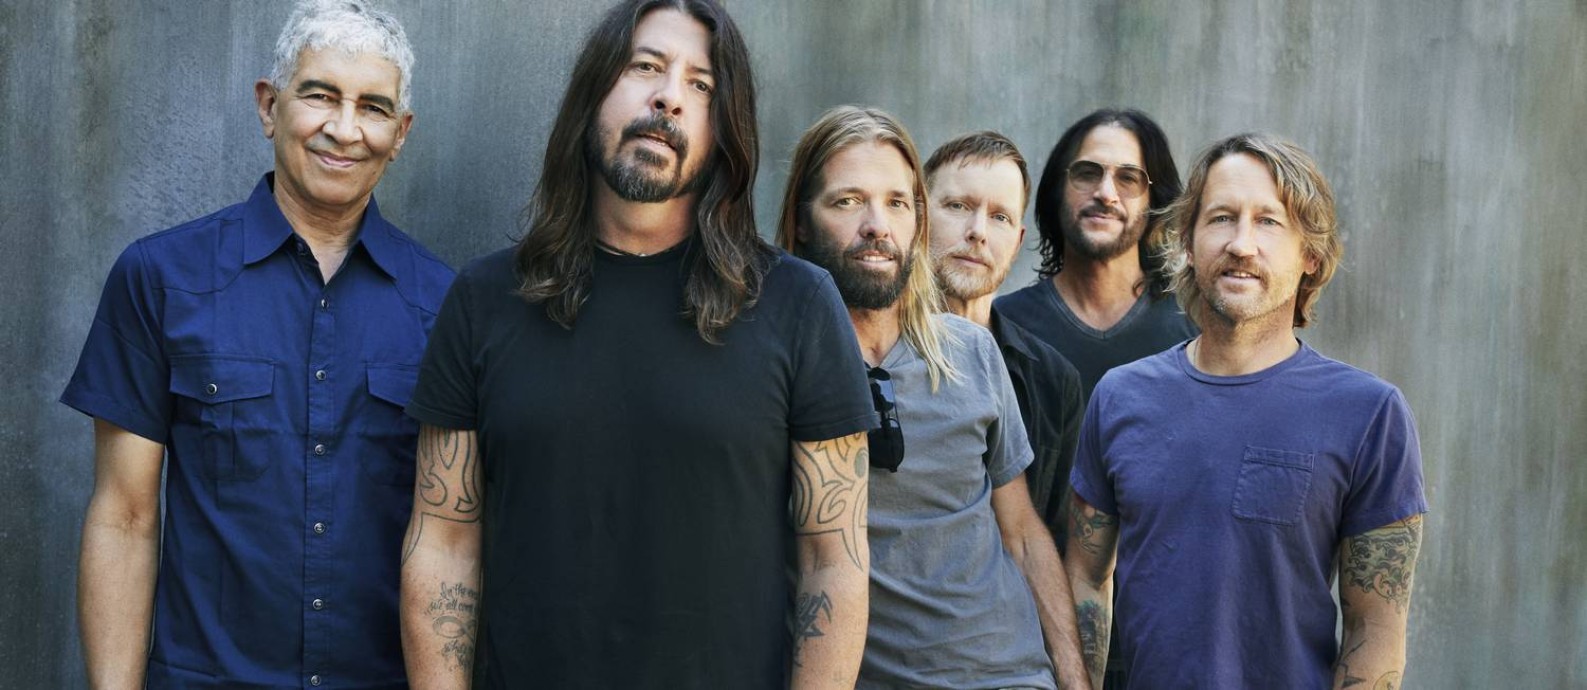 O grupo americano Foo Fighters, com o líder Dave Grohl à frente Foto: Divulgação